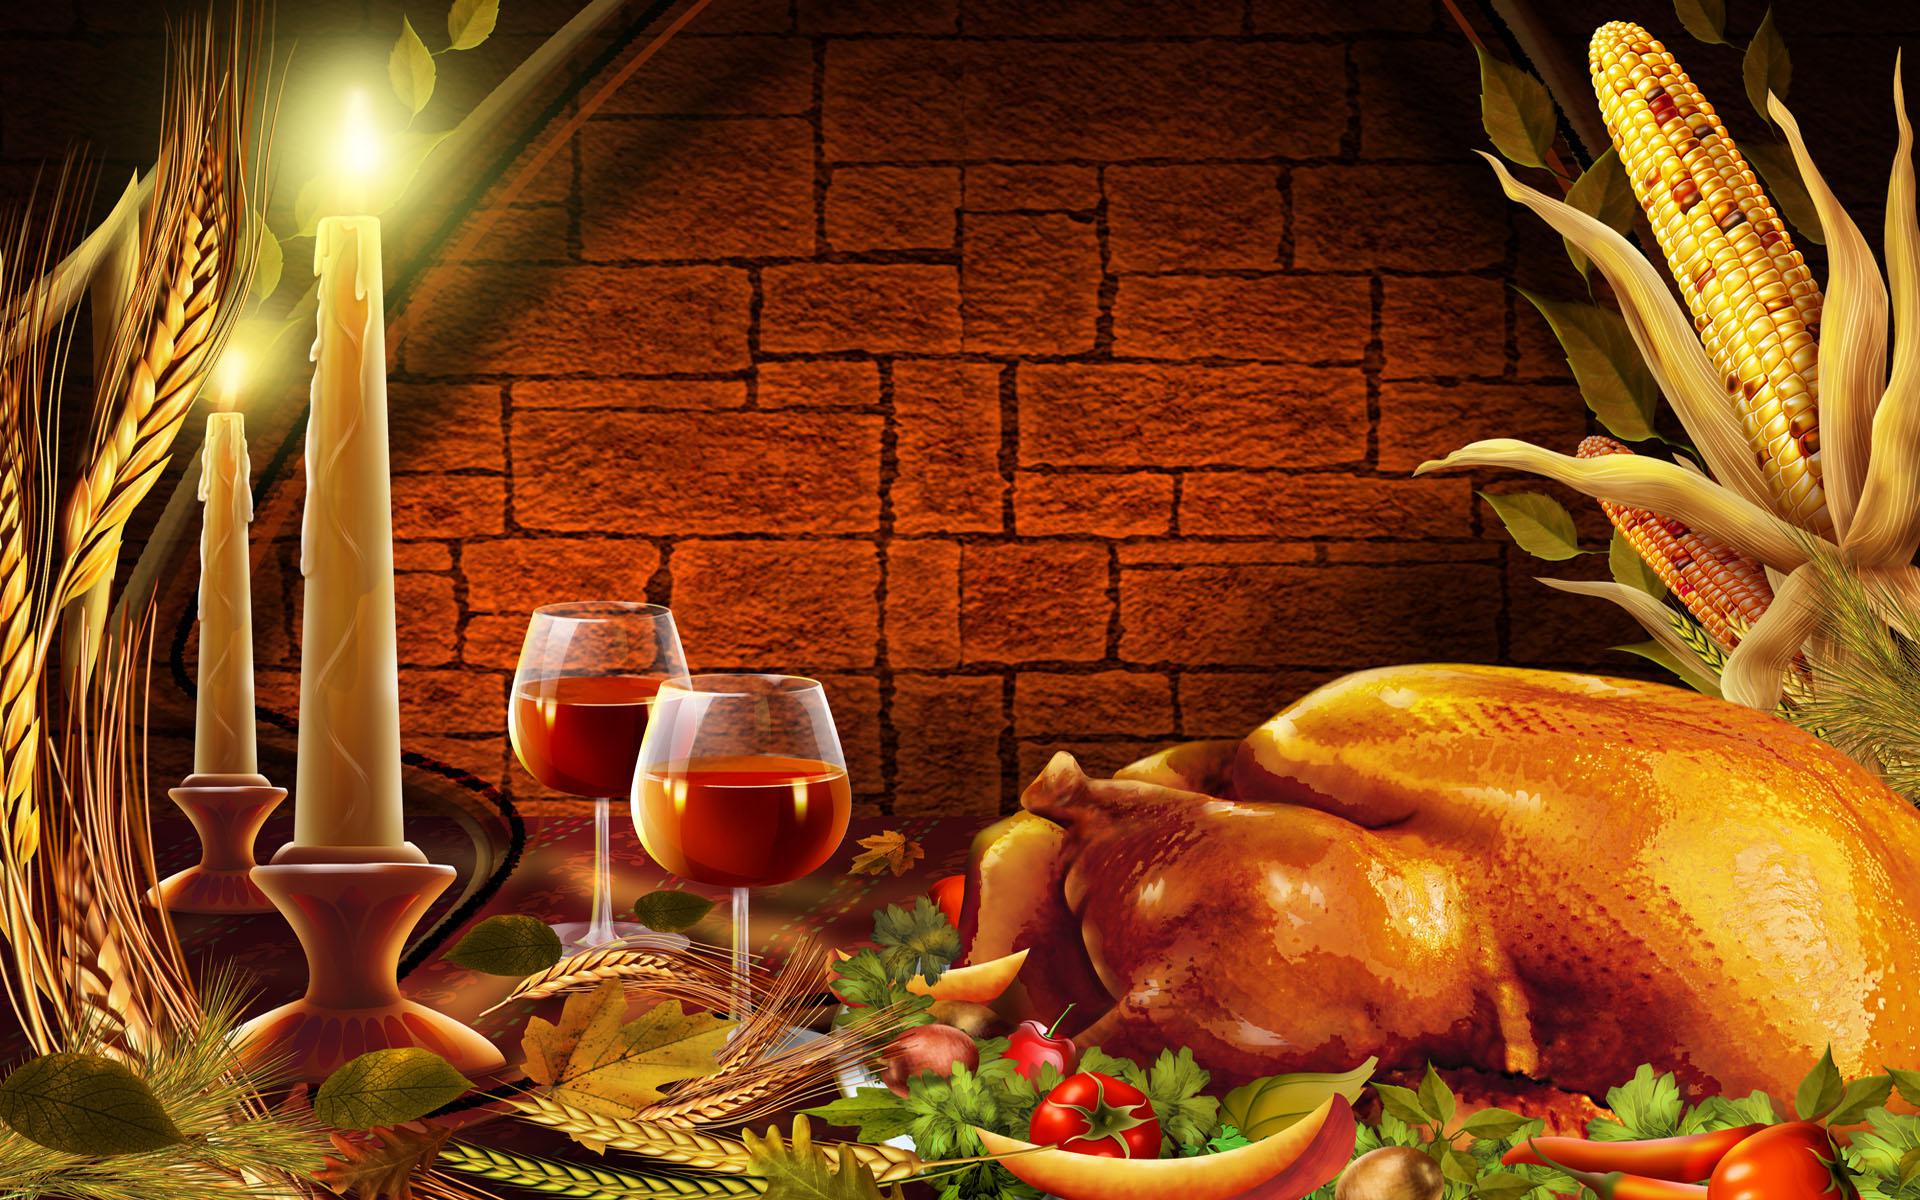 Thanksgiving wallpaper free download